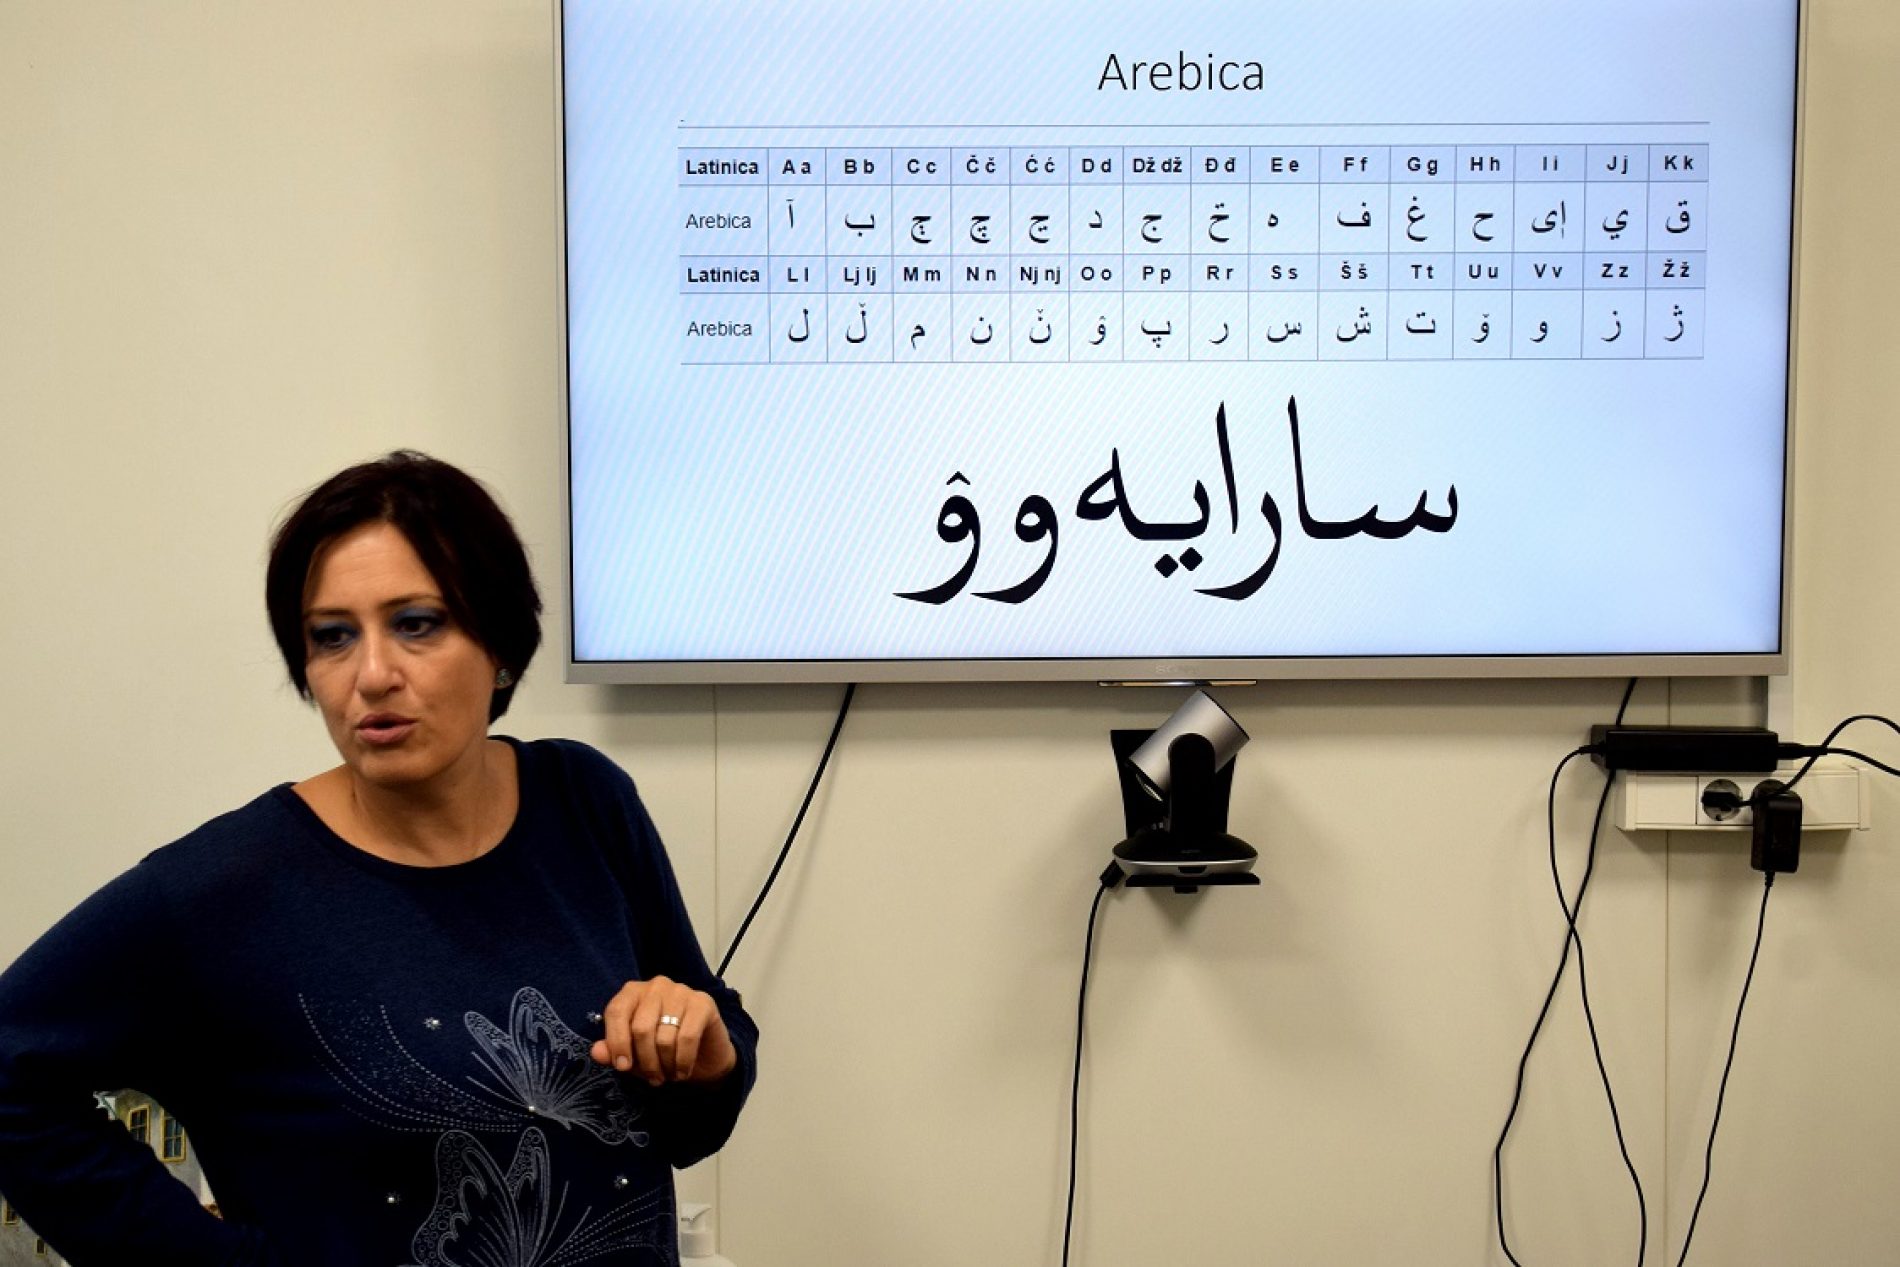 Institut za jezik predstavlja konverter latinice i ćirilice u bosansku arebicu